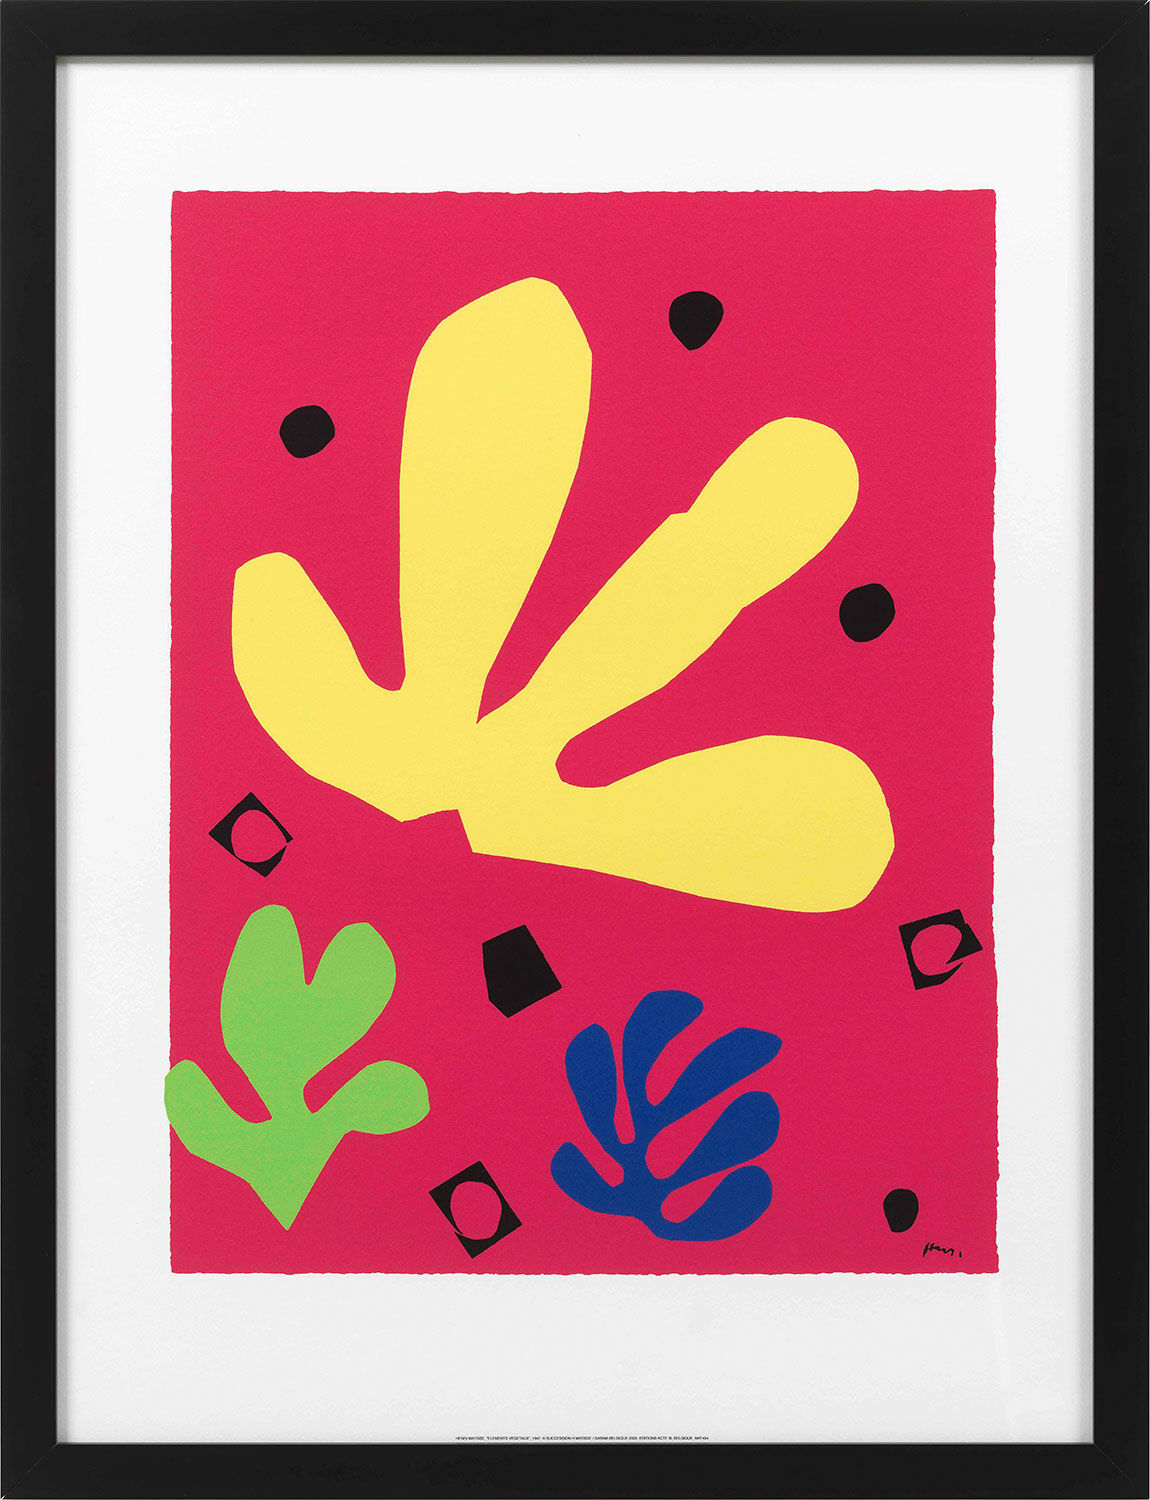 Billede "Elements Végetaux", indrammet von Henri Matisse